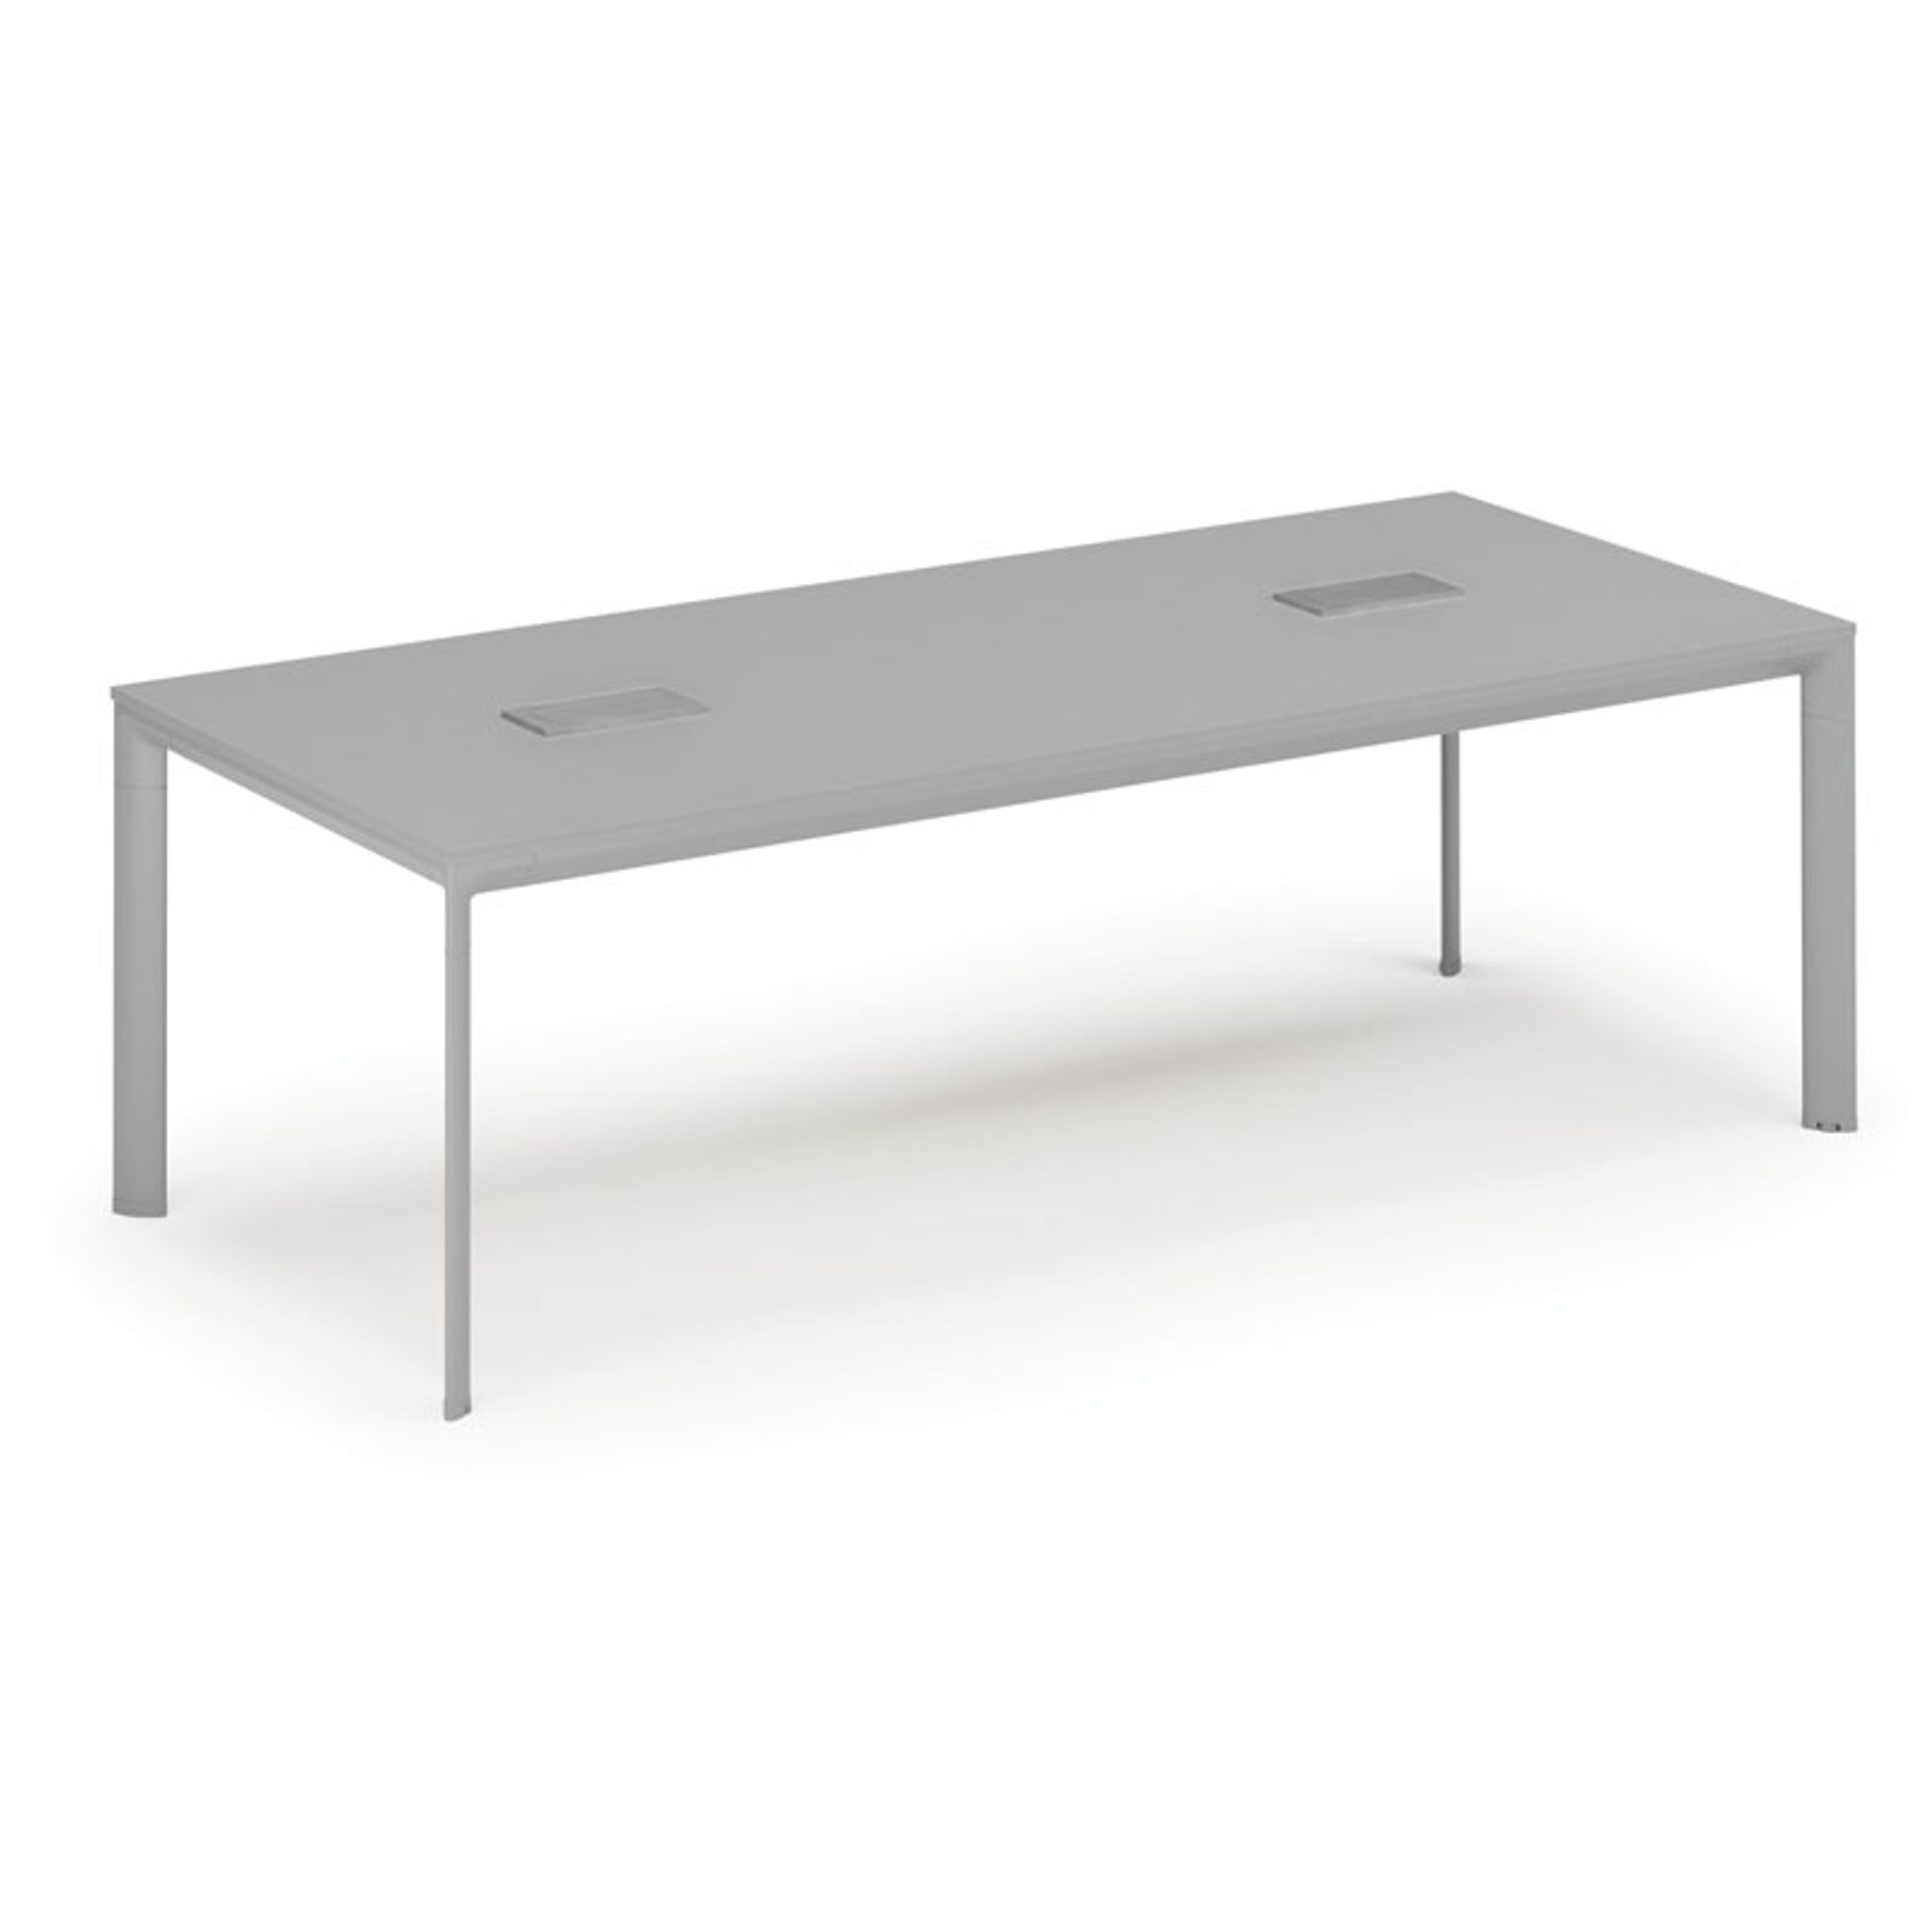 Stôl INVITATION 2400 x 1200 x 740, sivá + 2x stolná zásuvka TYP I, strieborná